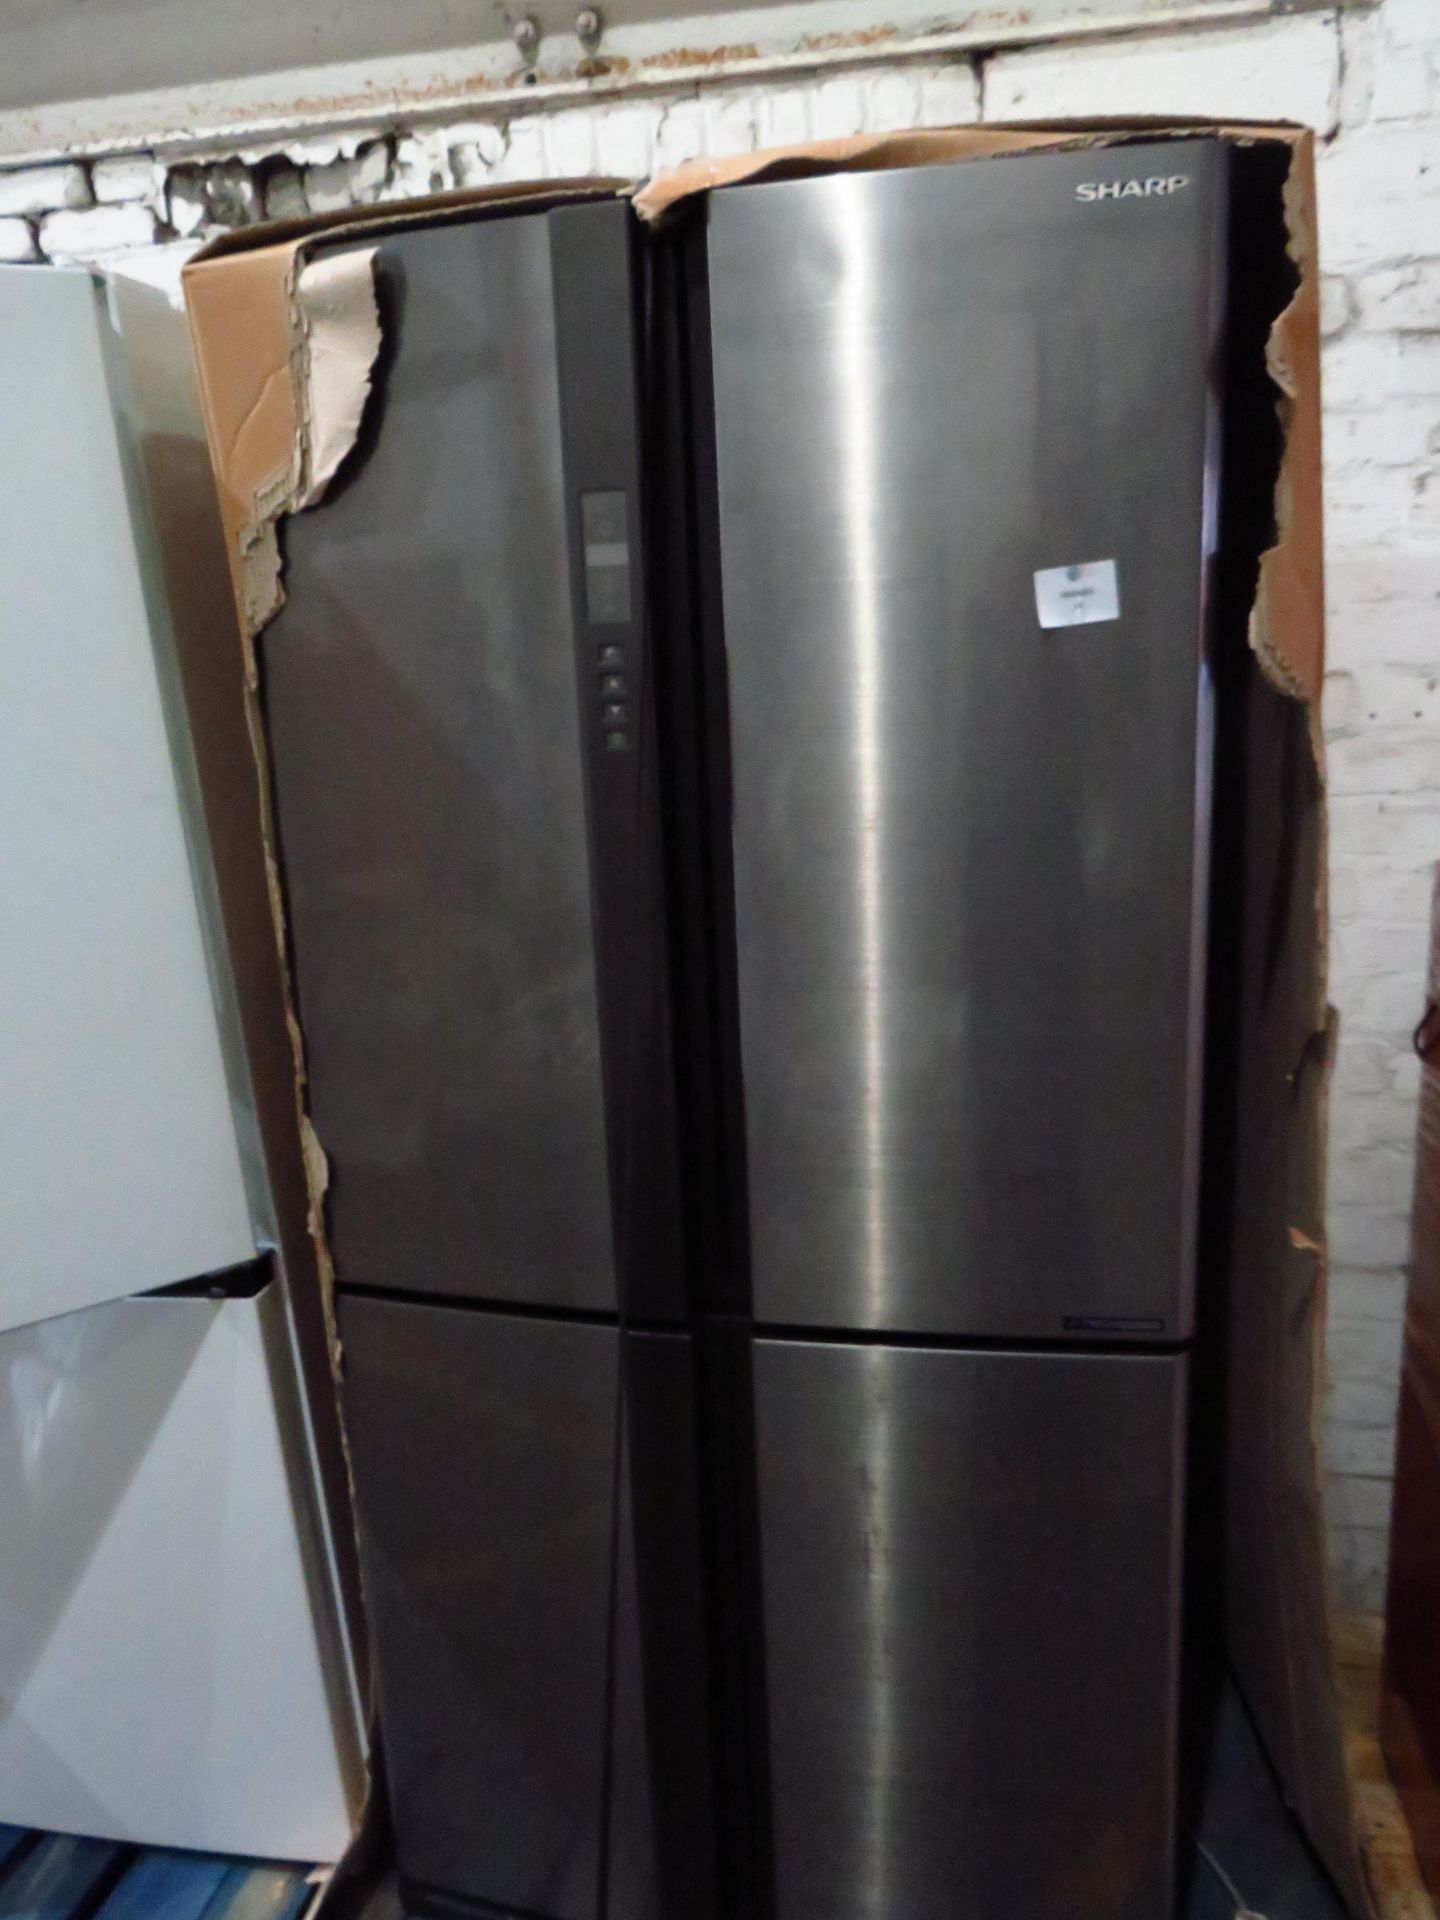 Sharp 4 door American fridge freezer, powers on but not getting cold